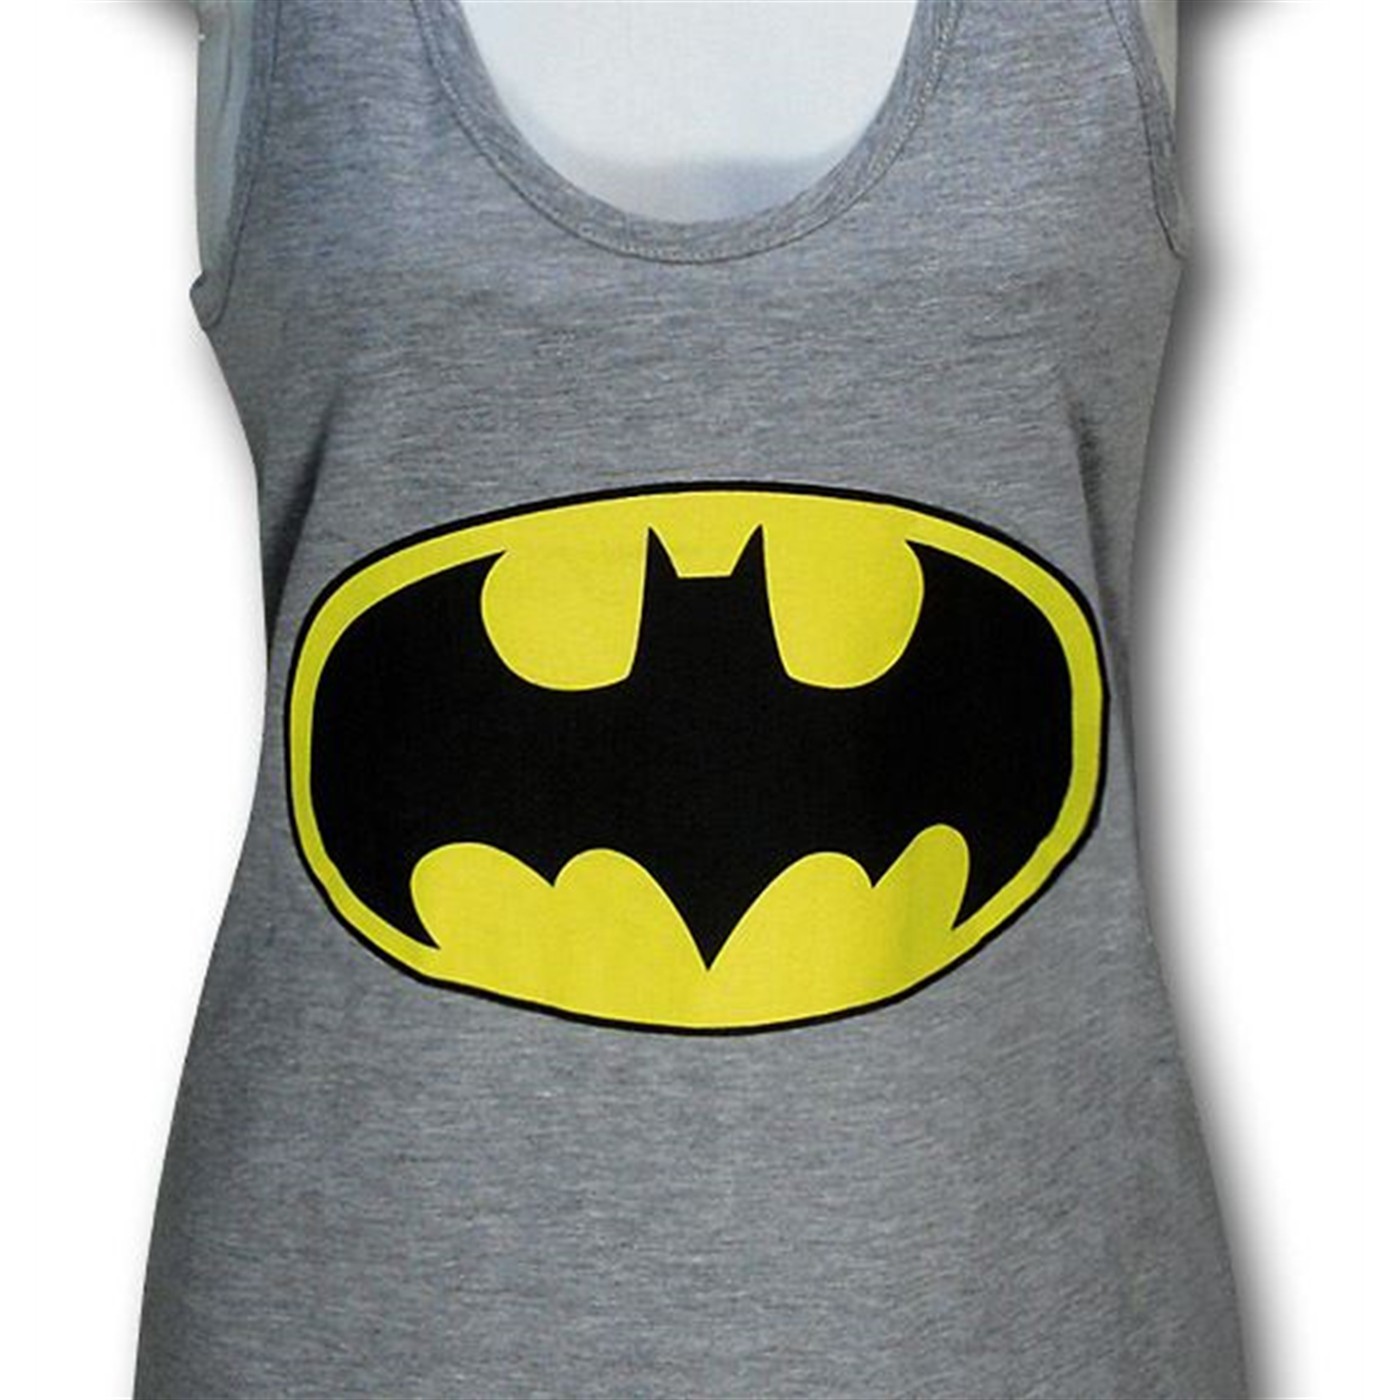 Batman Women's Junior's Grey Tank Top